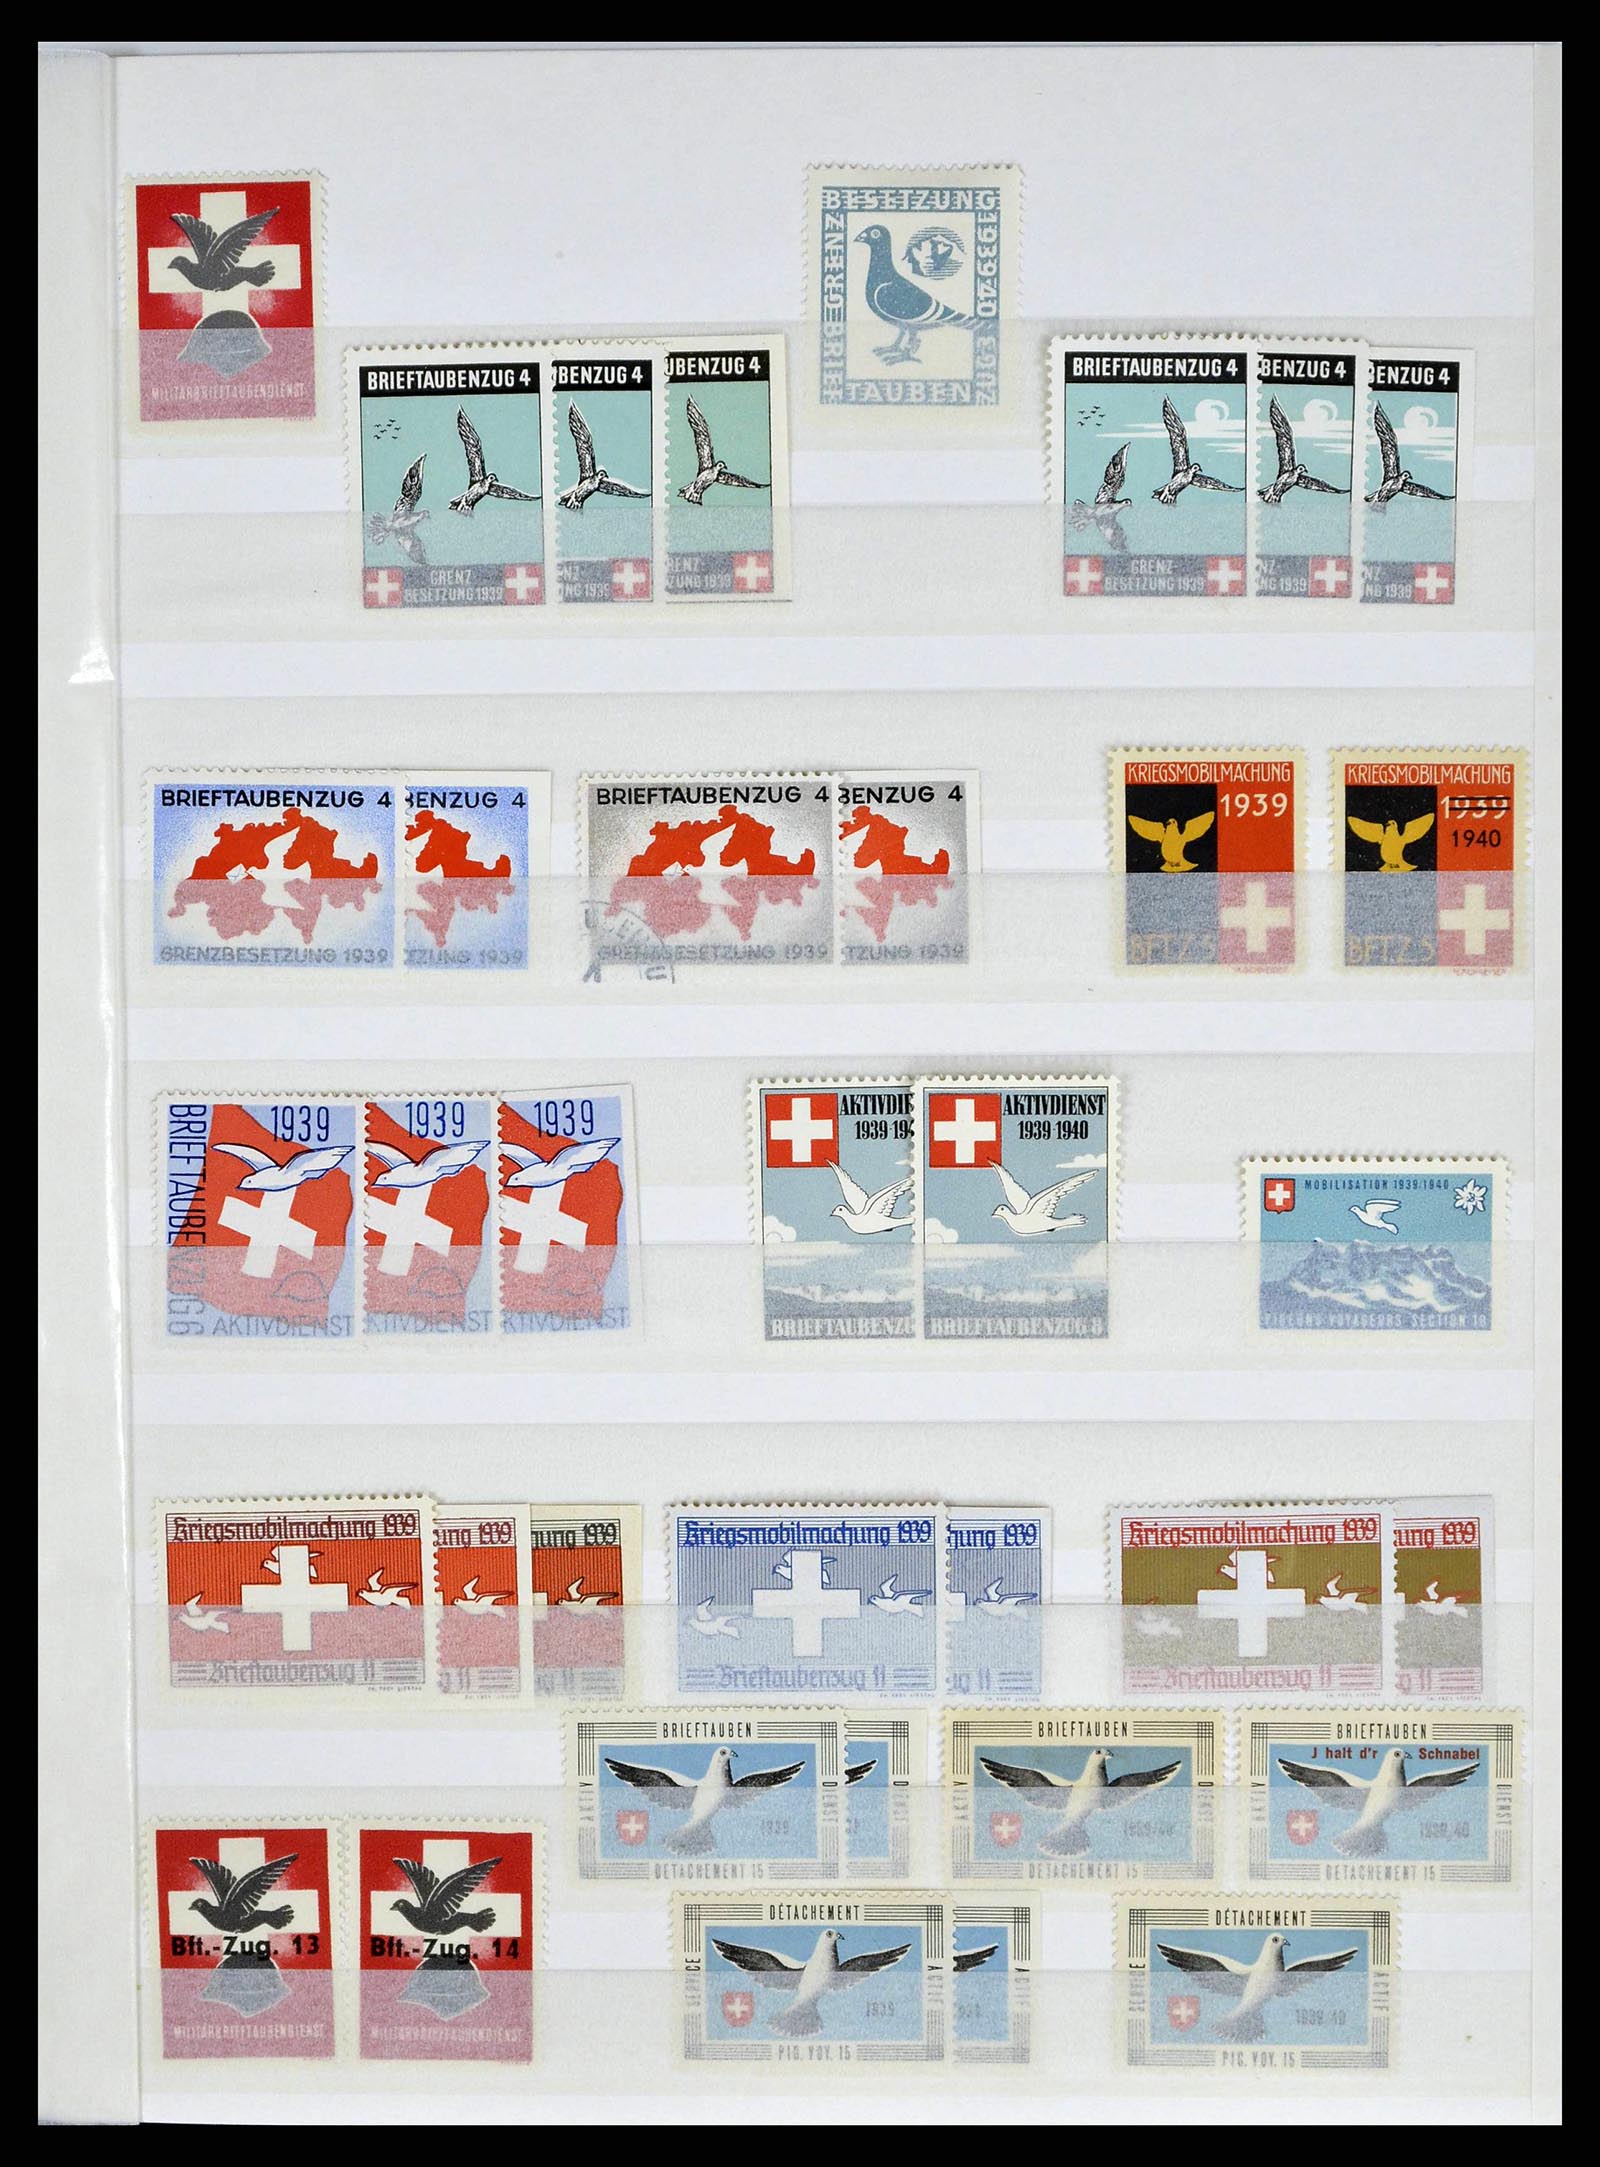 38695 0025 - Stamp collection 38695 Switzerland soldierstamps 1914-1945.